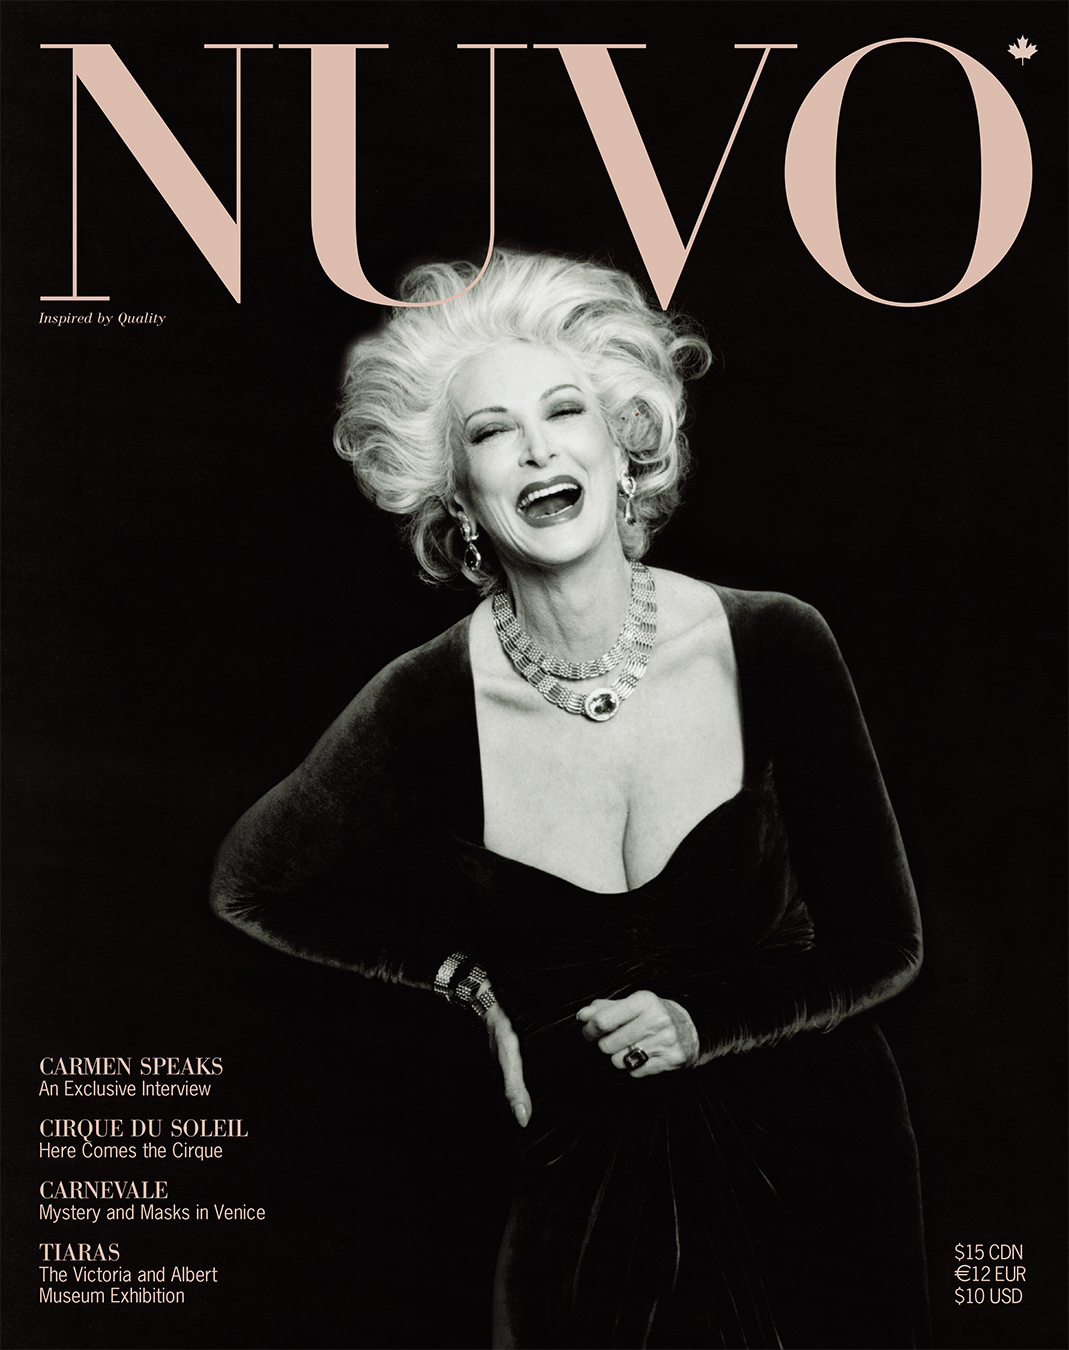 NUVO Magazine Winter 2002 Cover featuring Carmen Dell'Orefice